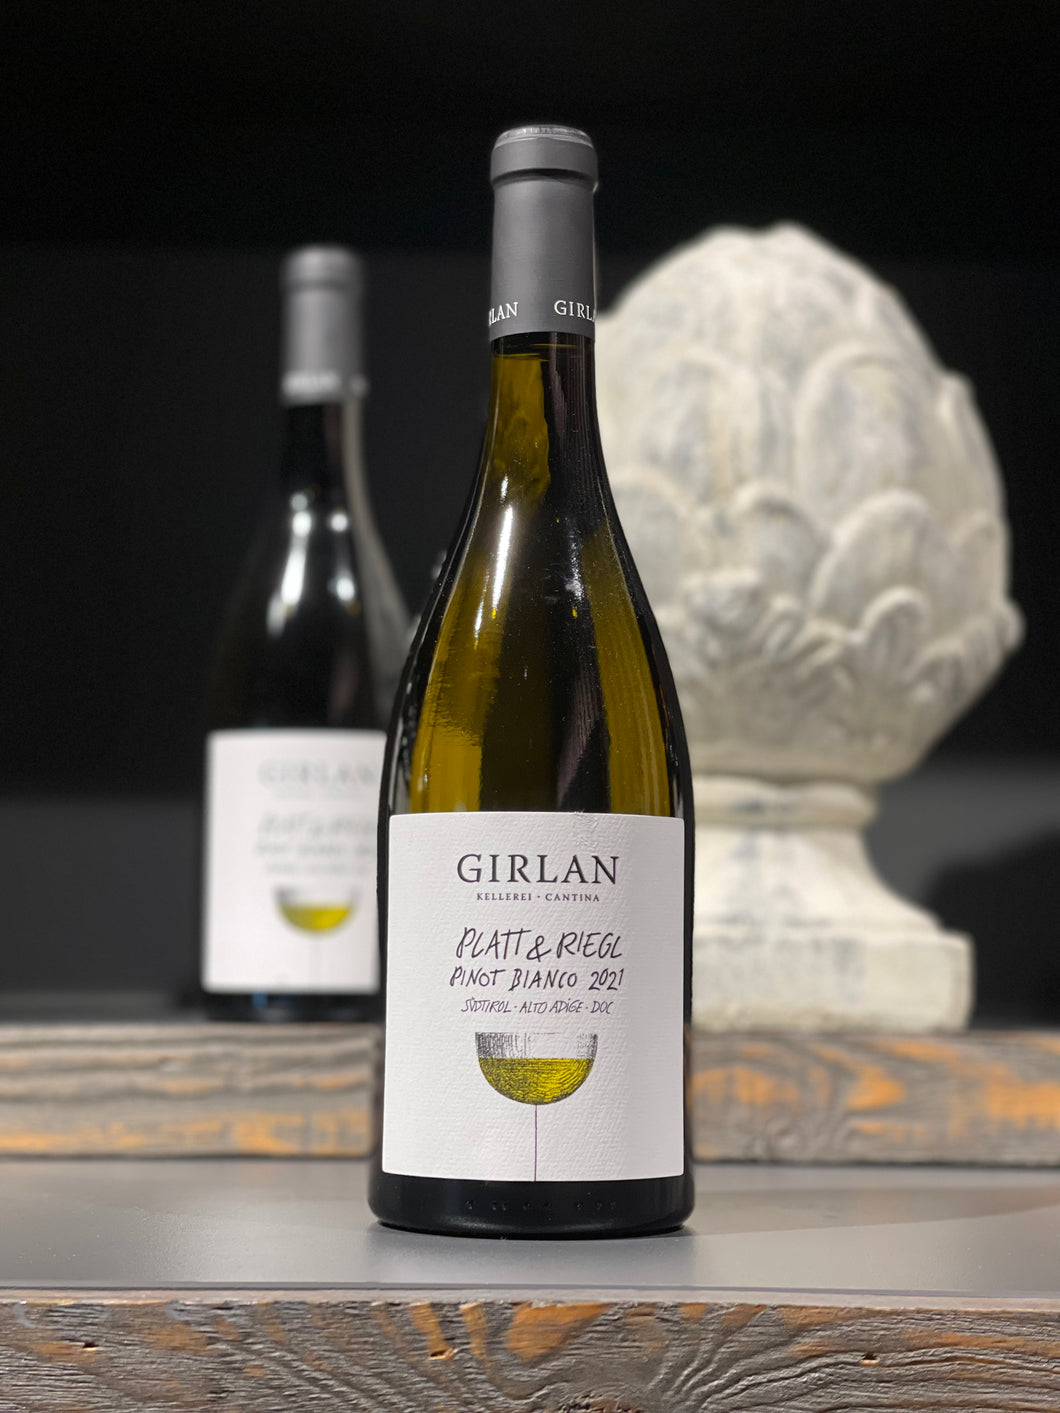 Girlan Platt & Riegel Pinot Bianco 2022